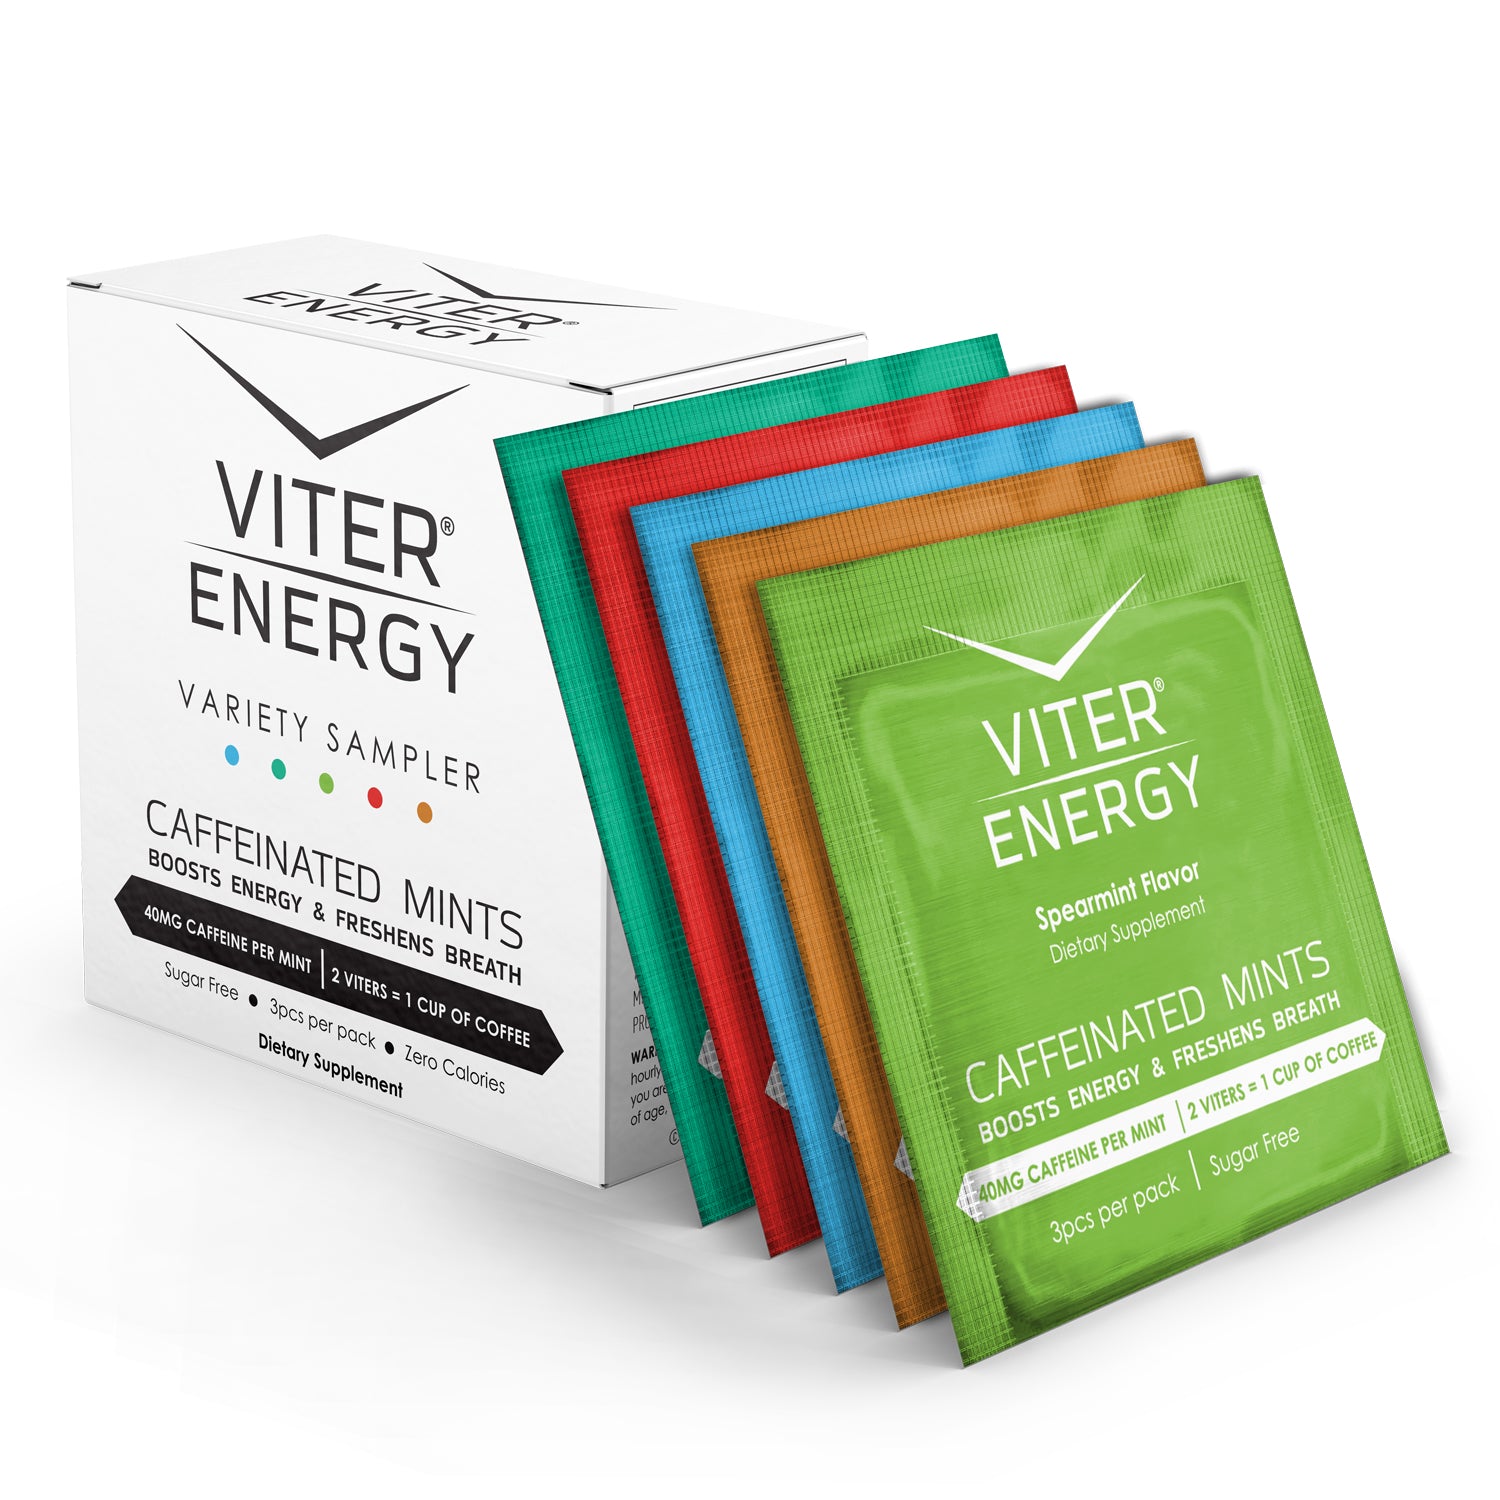 Try Viter Energy Caffeine Mints - 5 Flavor Sampler